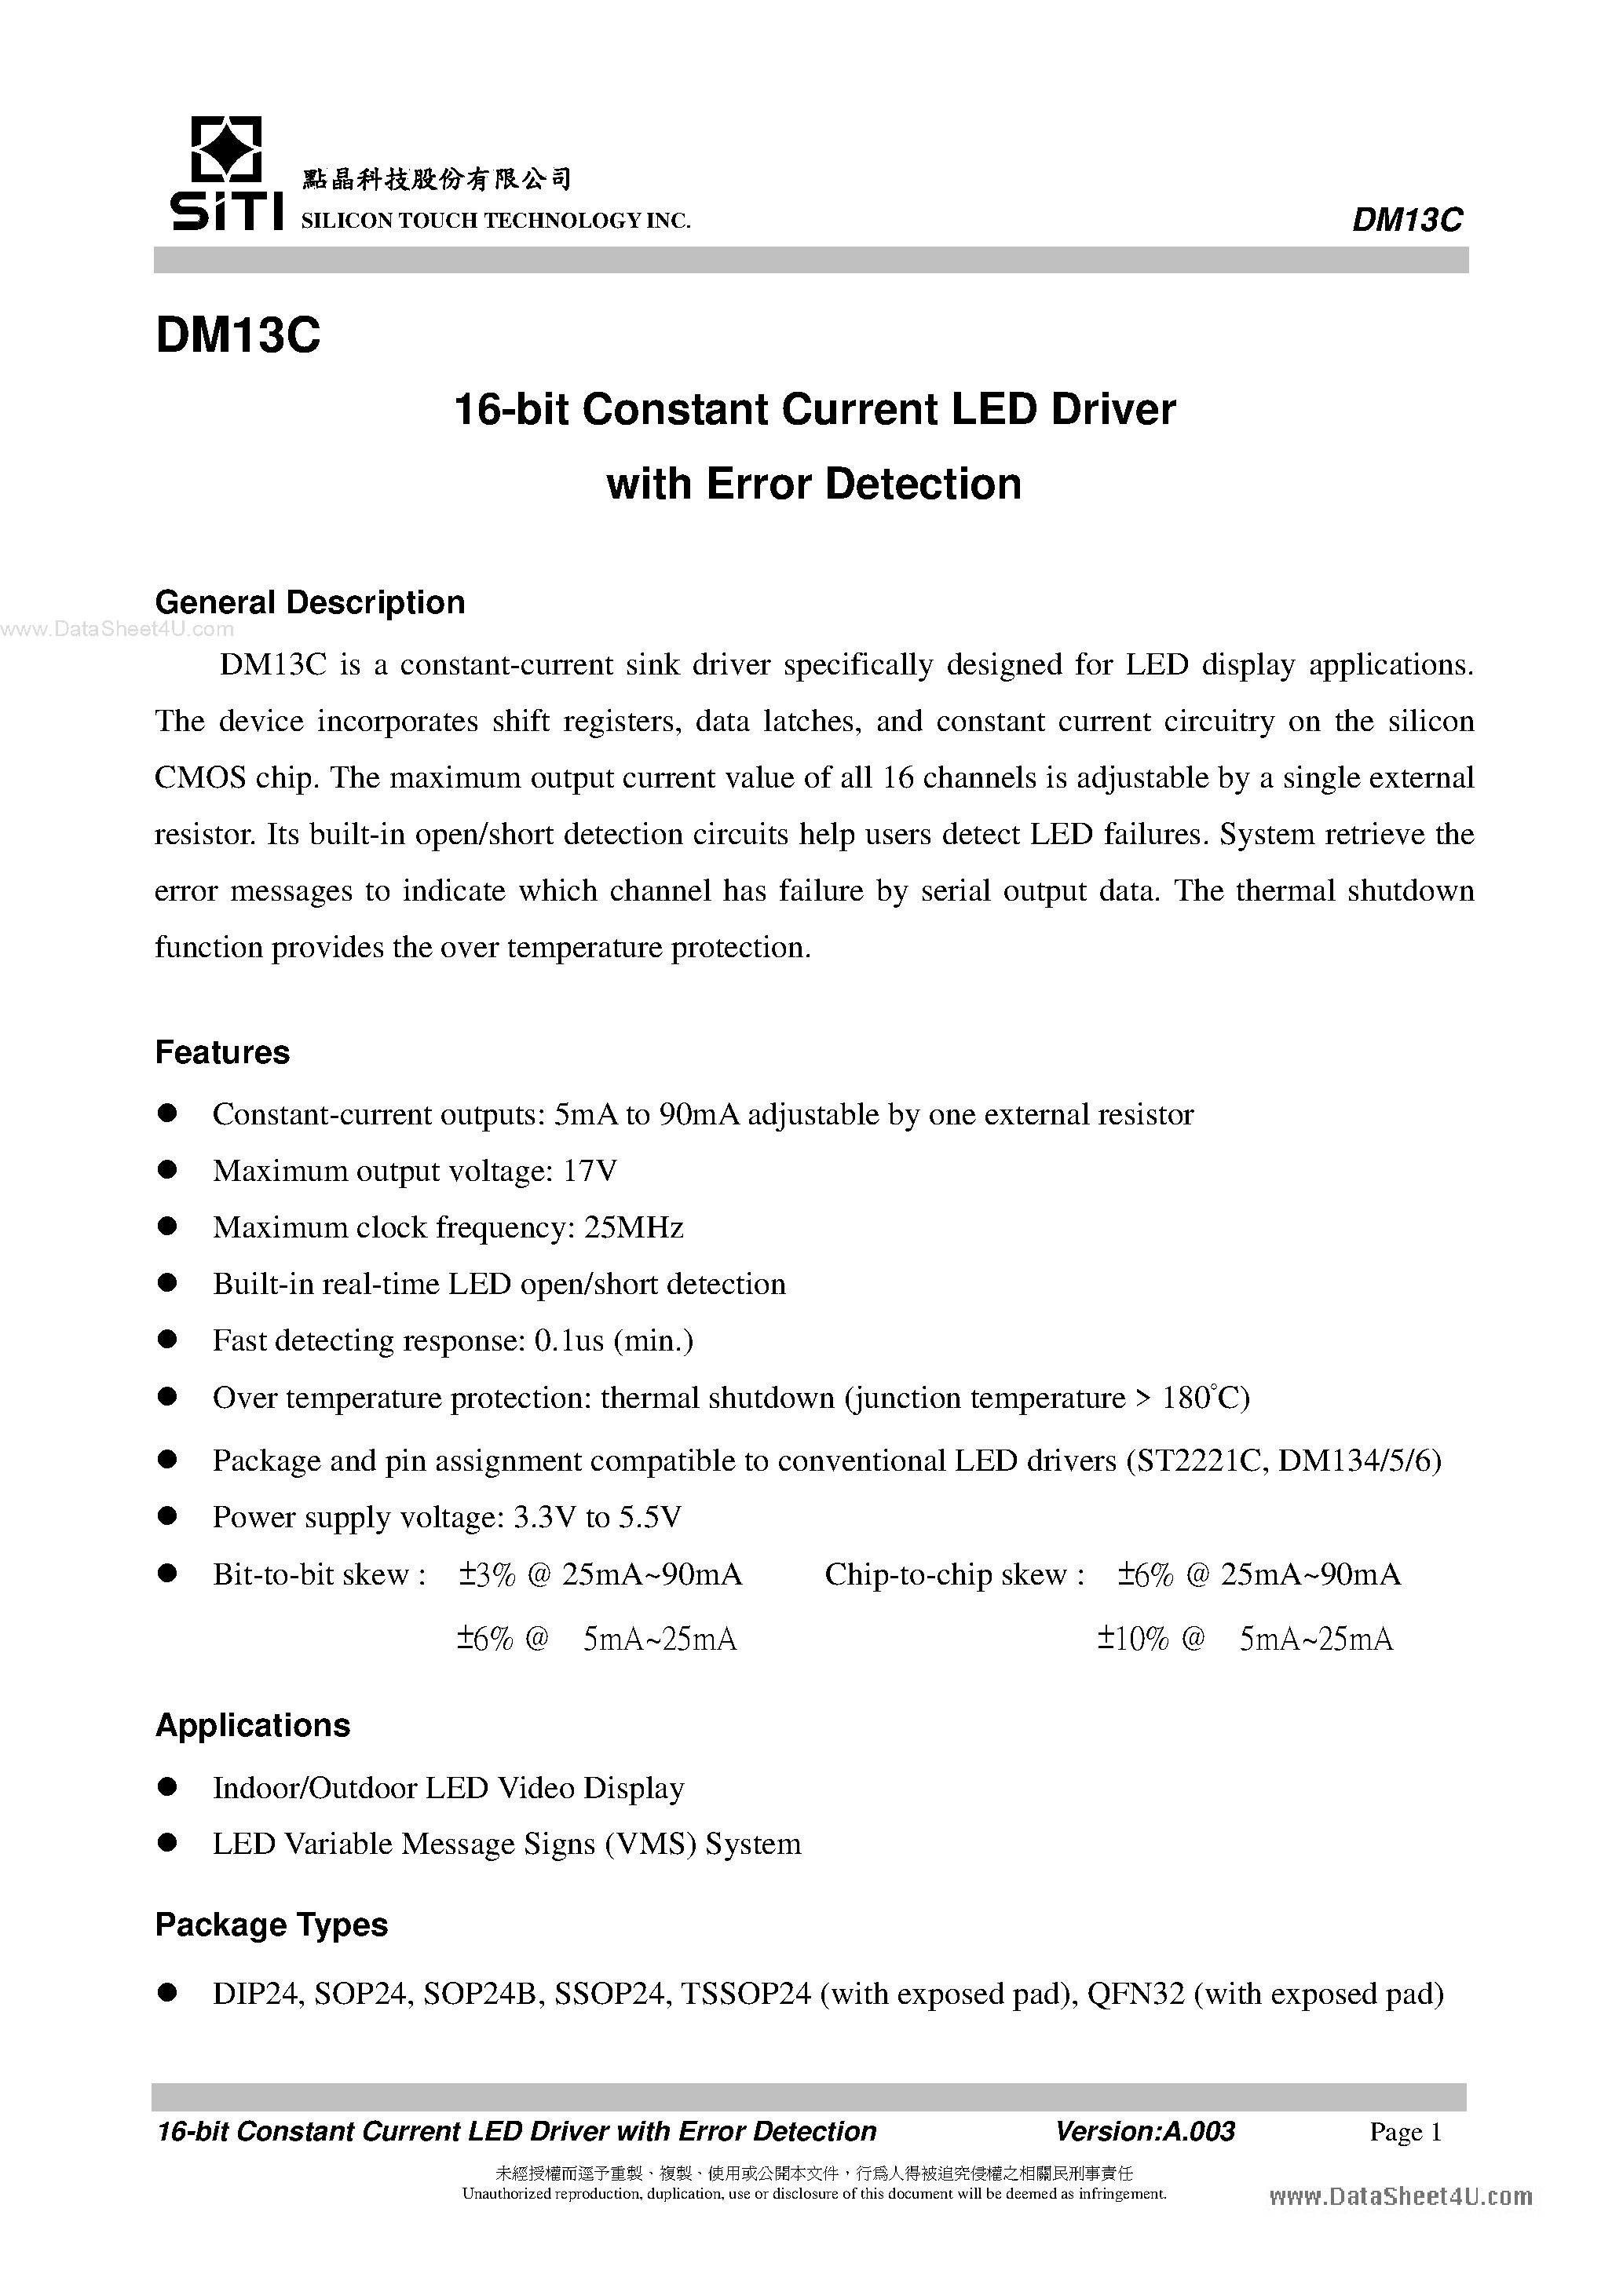 Datasheet DM13C - 16-Bit Constant Current LED Driver page 2